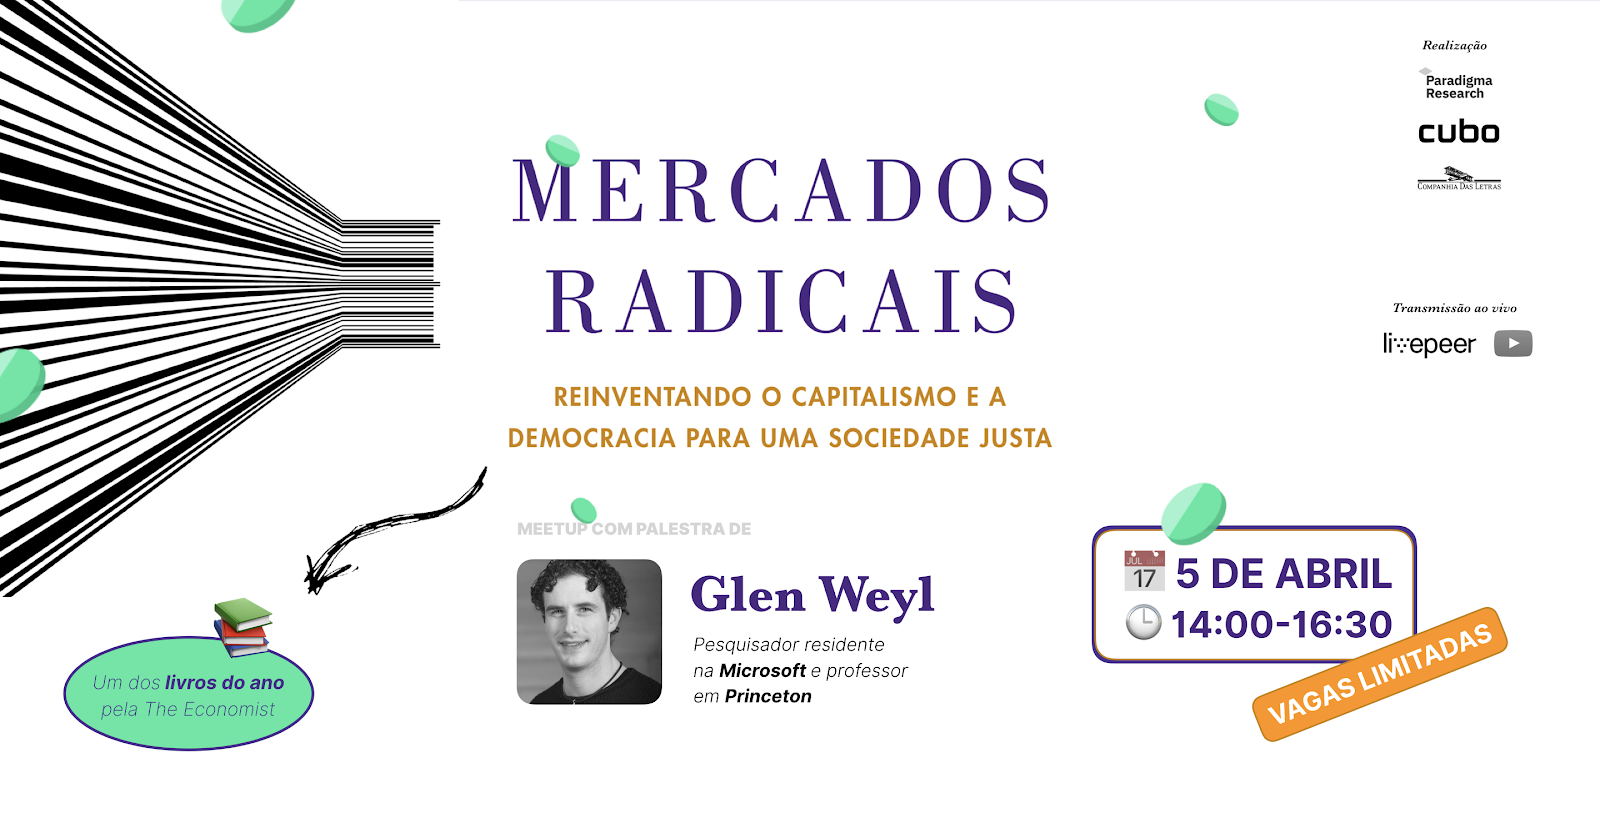 Autor de livro do ano, economista Glen Weyl discute  mercados radicais e criptomoedas nesta sexta em SP